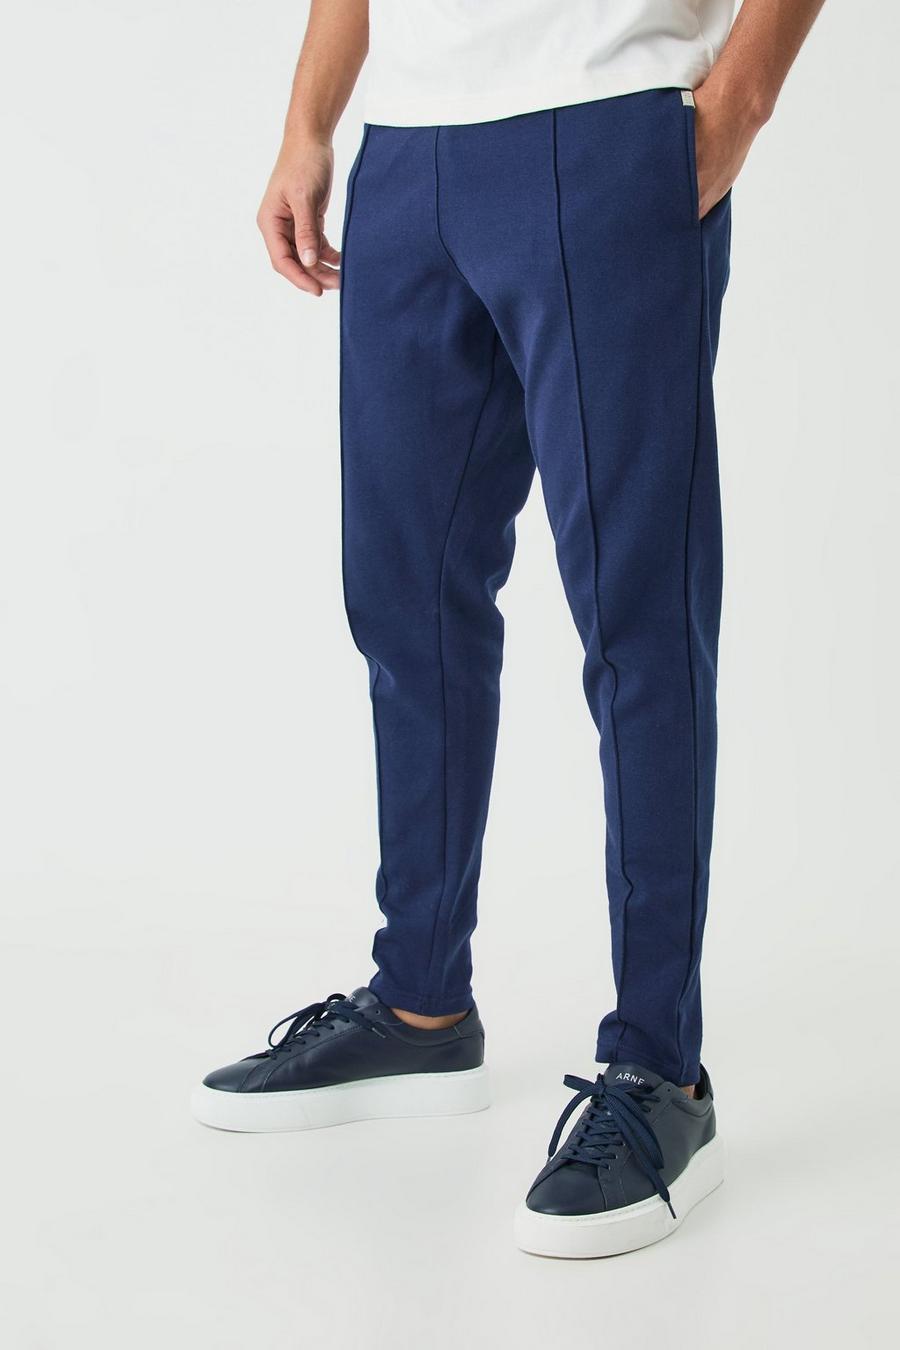 Pantalón deportivo ajustado ajustado con alforza, Navy